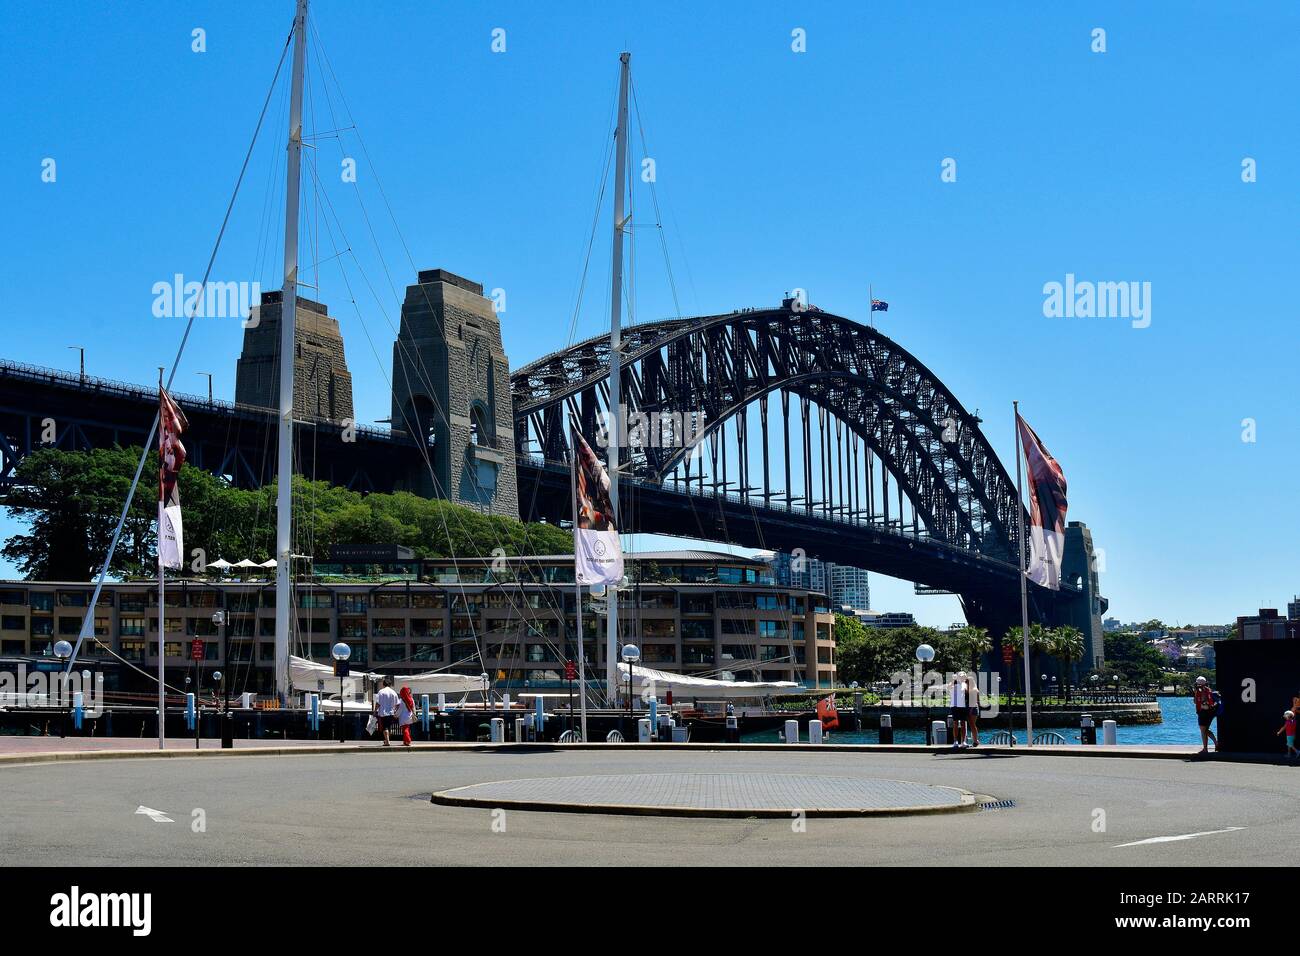 Sydney, Nouvelle-Galles du Sud, Australie - 30 octobre 2017 : touristes non identifiés au Sydney Harbour Bridge et à l'hôtel Hyatt sur Circular Quay dans Le quartier des Rocks Banque D'Images